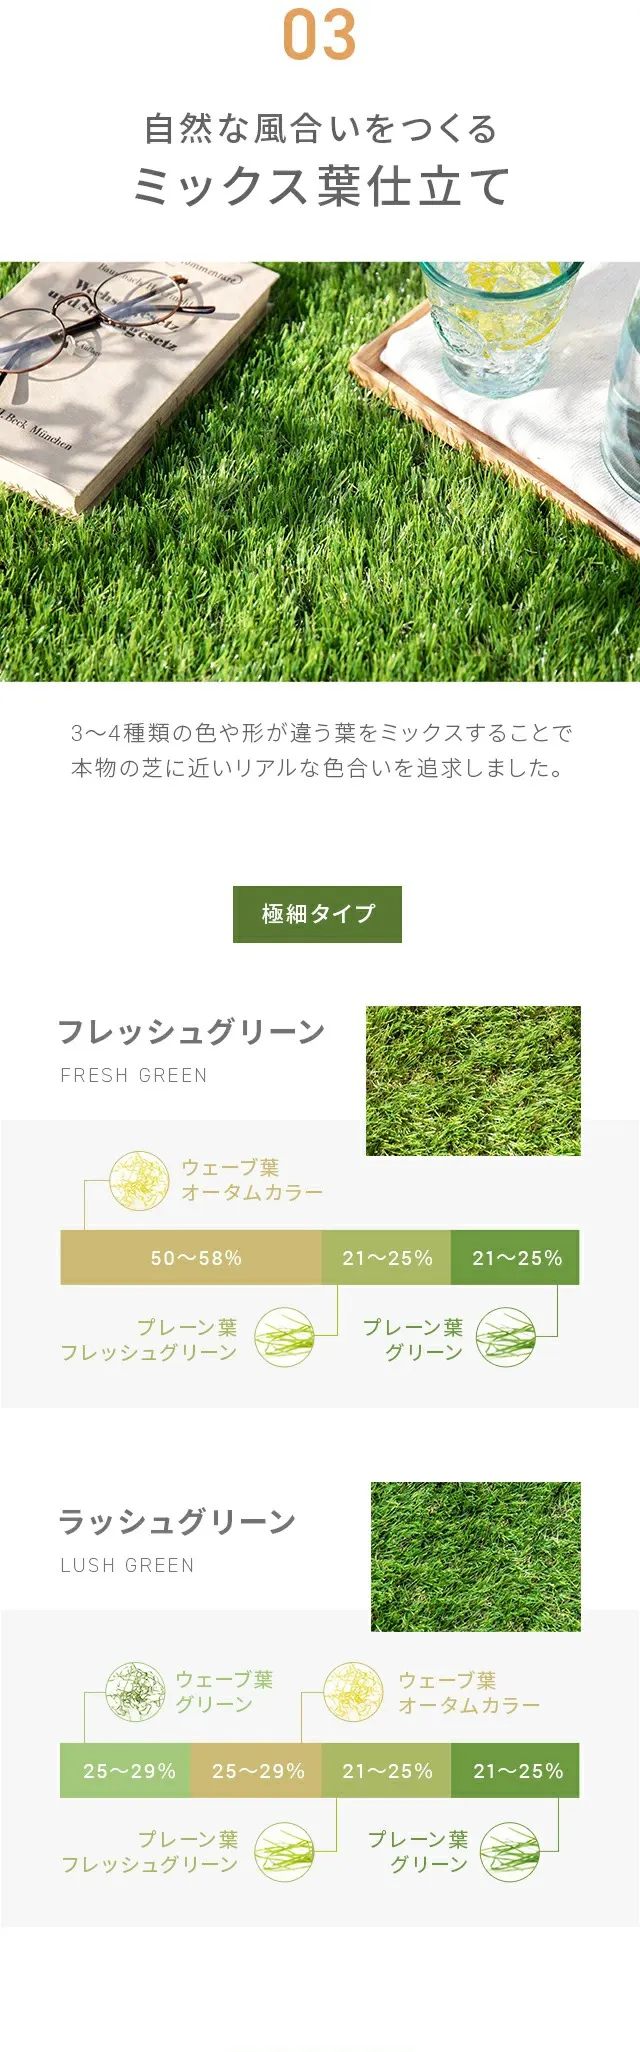 03.自然な風合いをつくるミックス葉仕立て、フレッシュグリーン、ラッシュグリーン